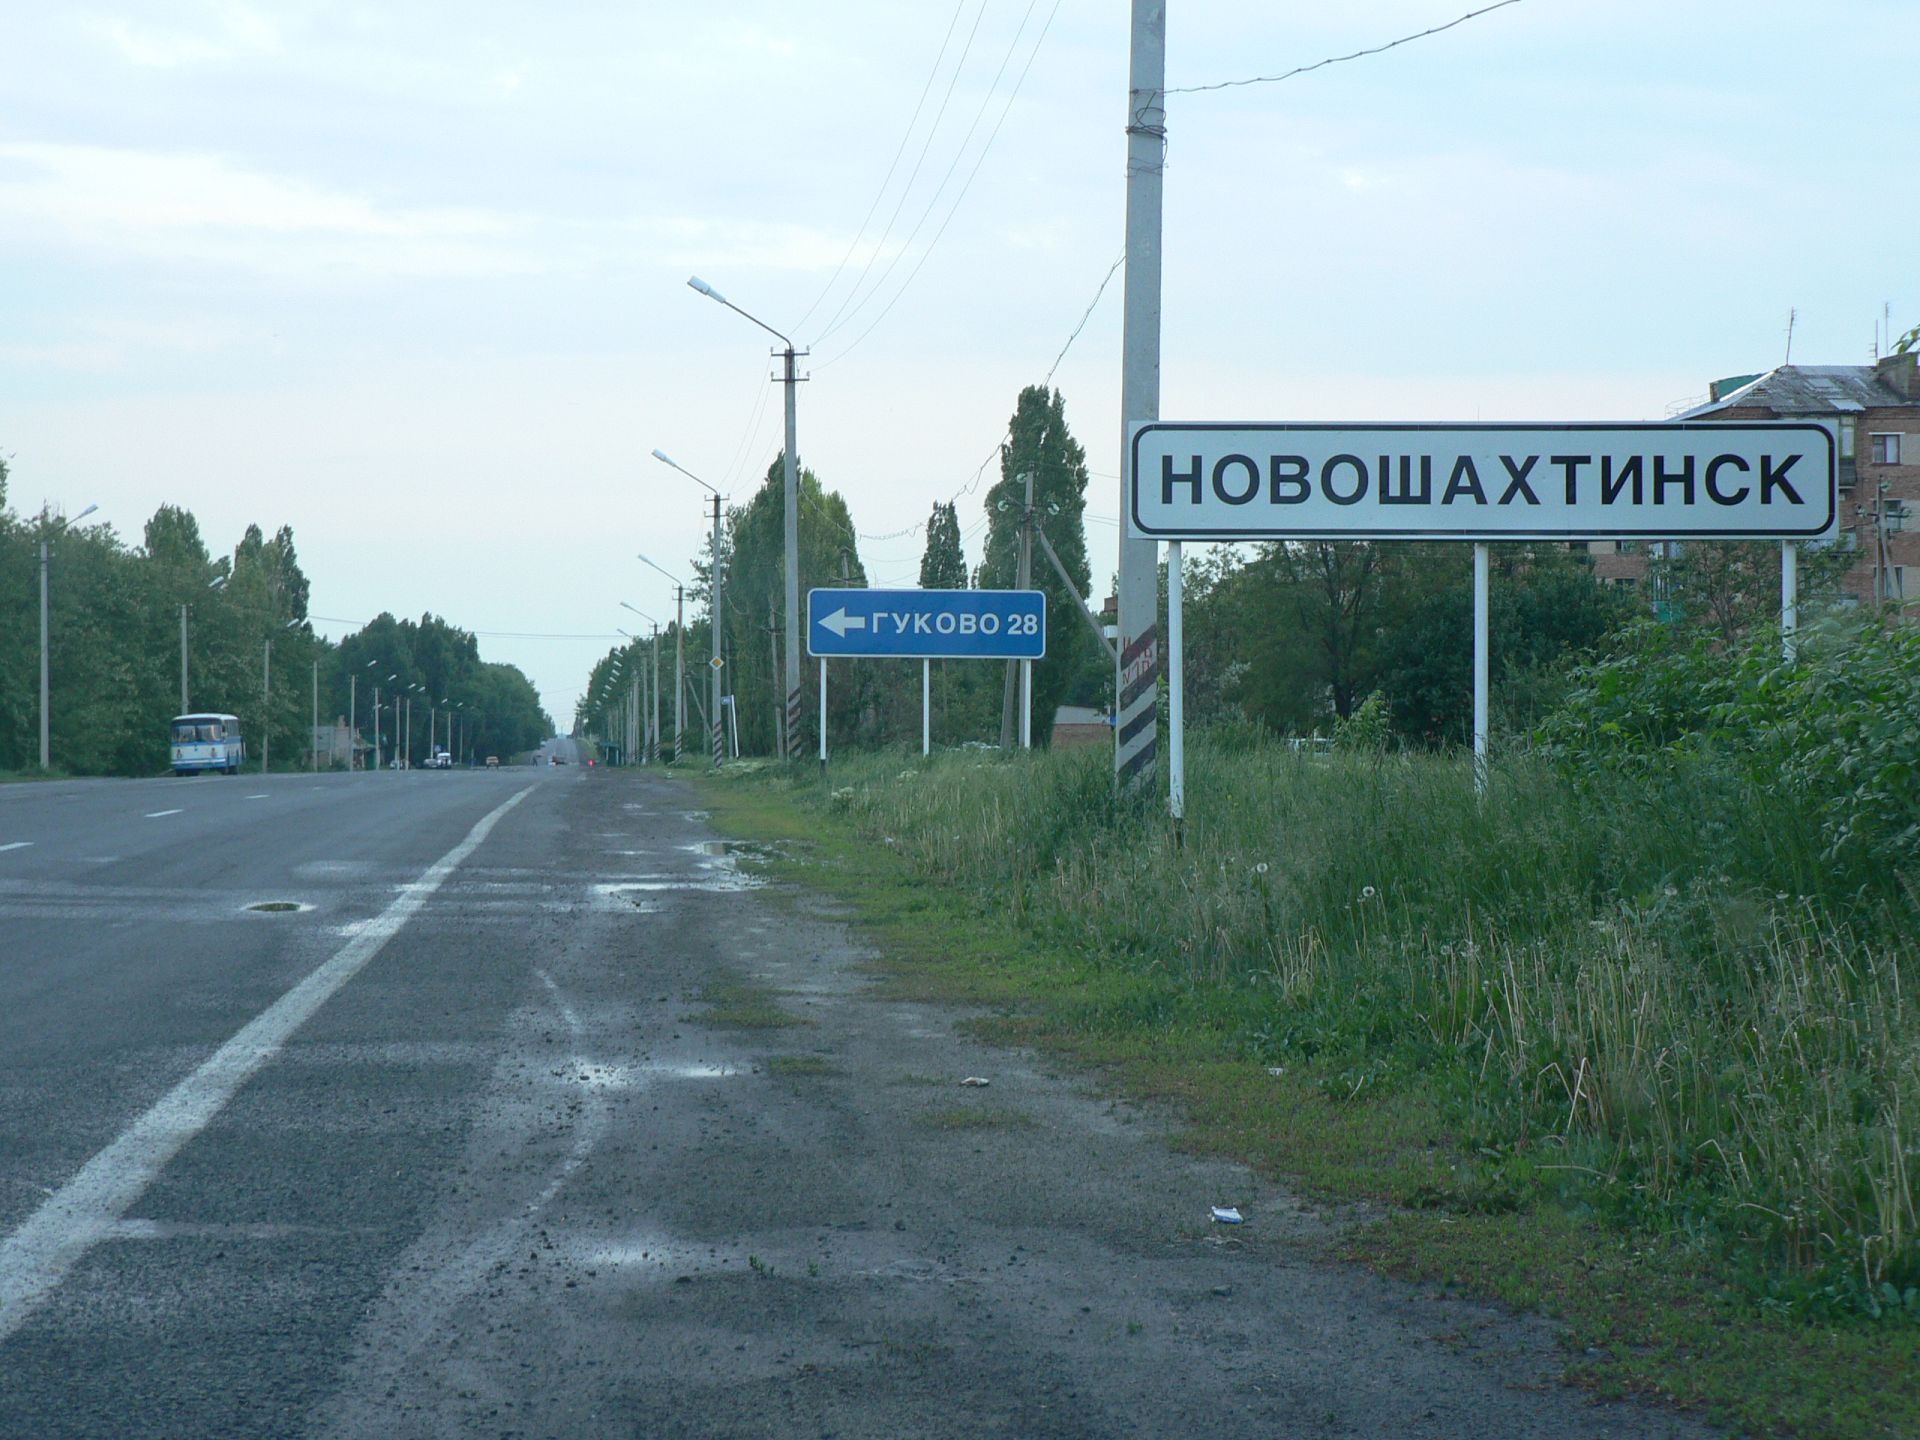 Новошахтинск. Въезд в город со стороны Украины. авторы сайта